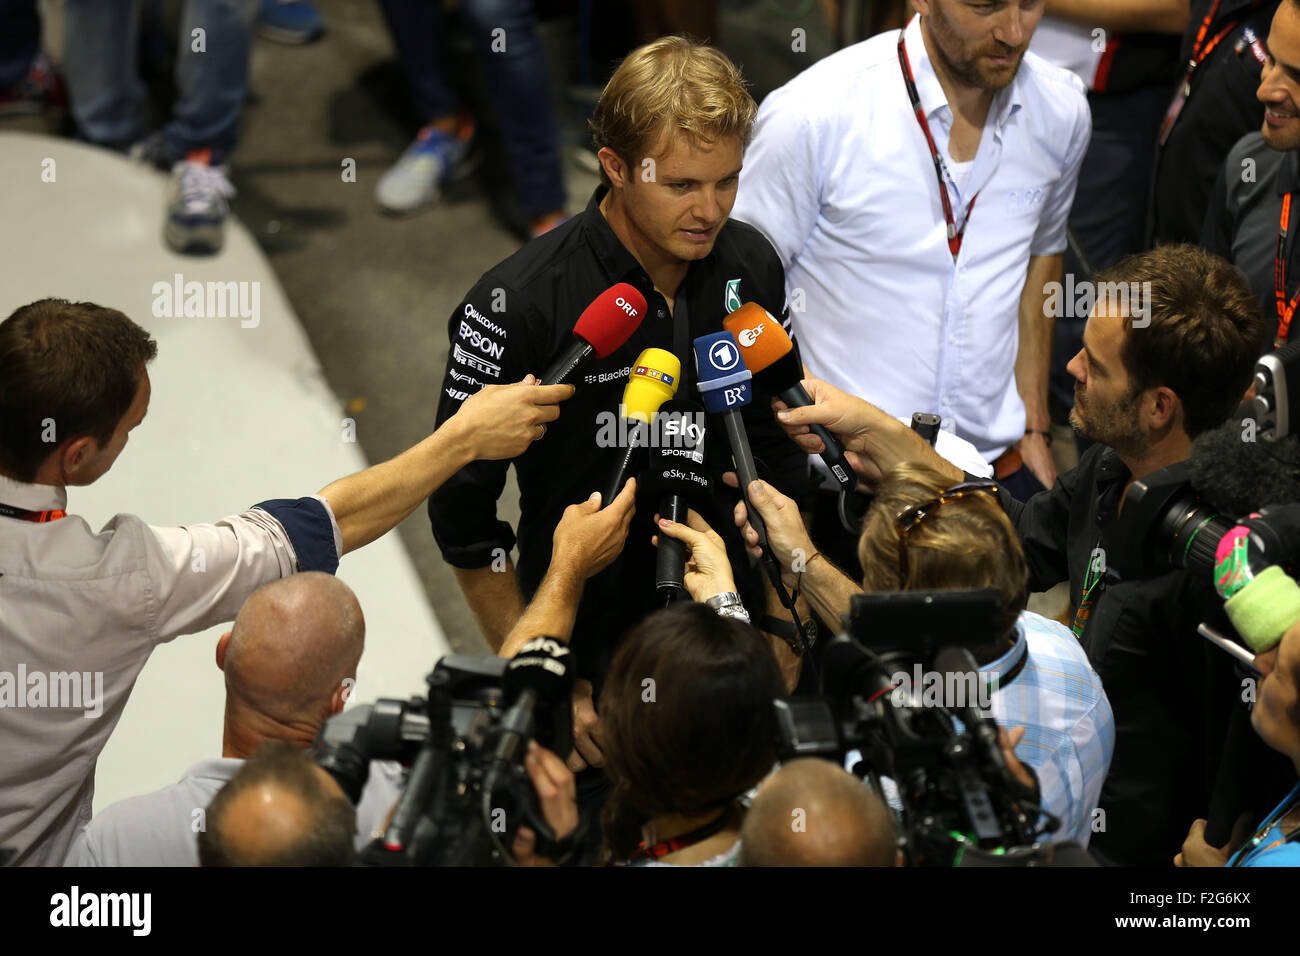 Automovilismo: Campeonato del Mundo de Fórmula Uno FIA 2015, Gran Premio de Singapur, #6 Nico Rosberg (GER, Mercedes AMG Petronas Formula One Team), Foto de stock